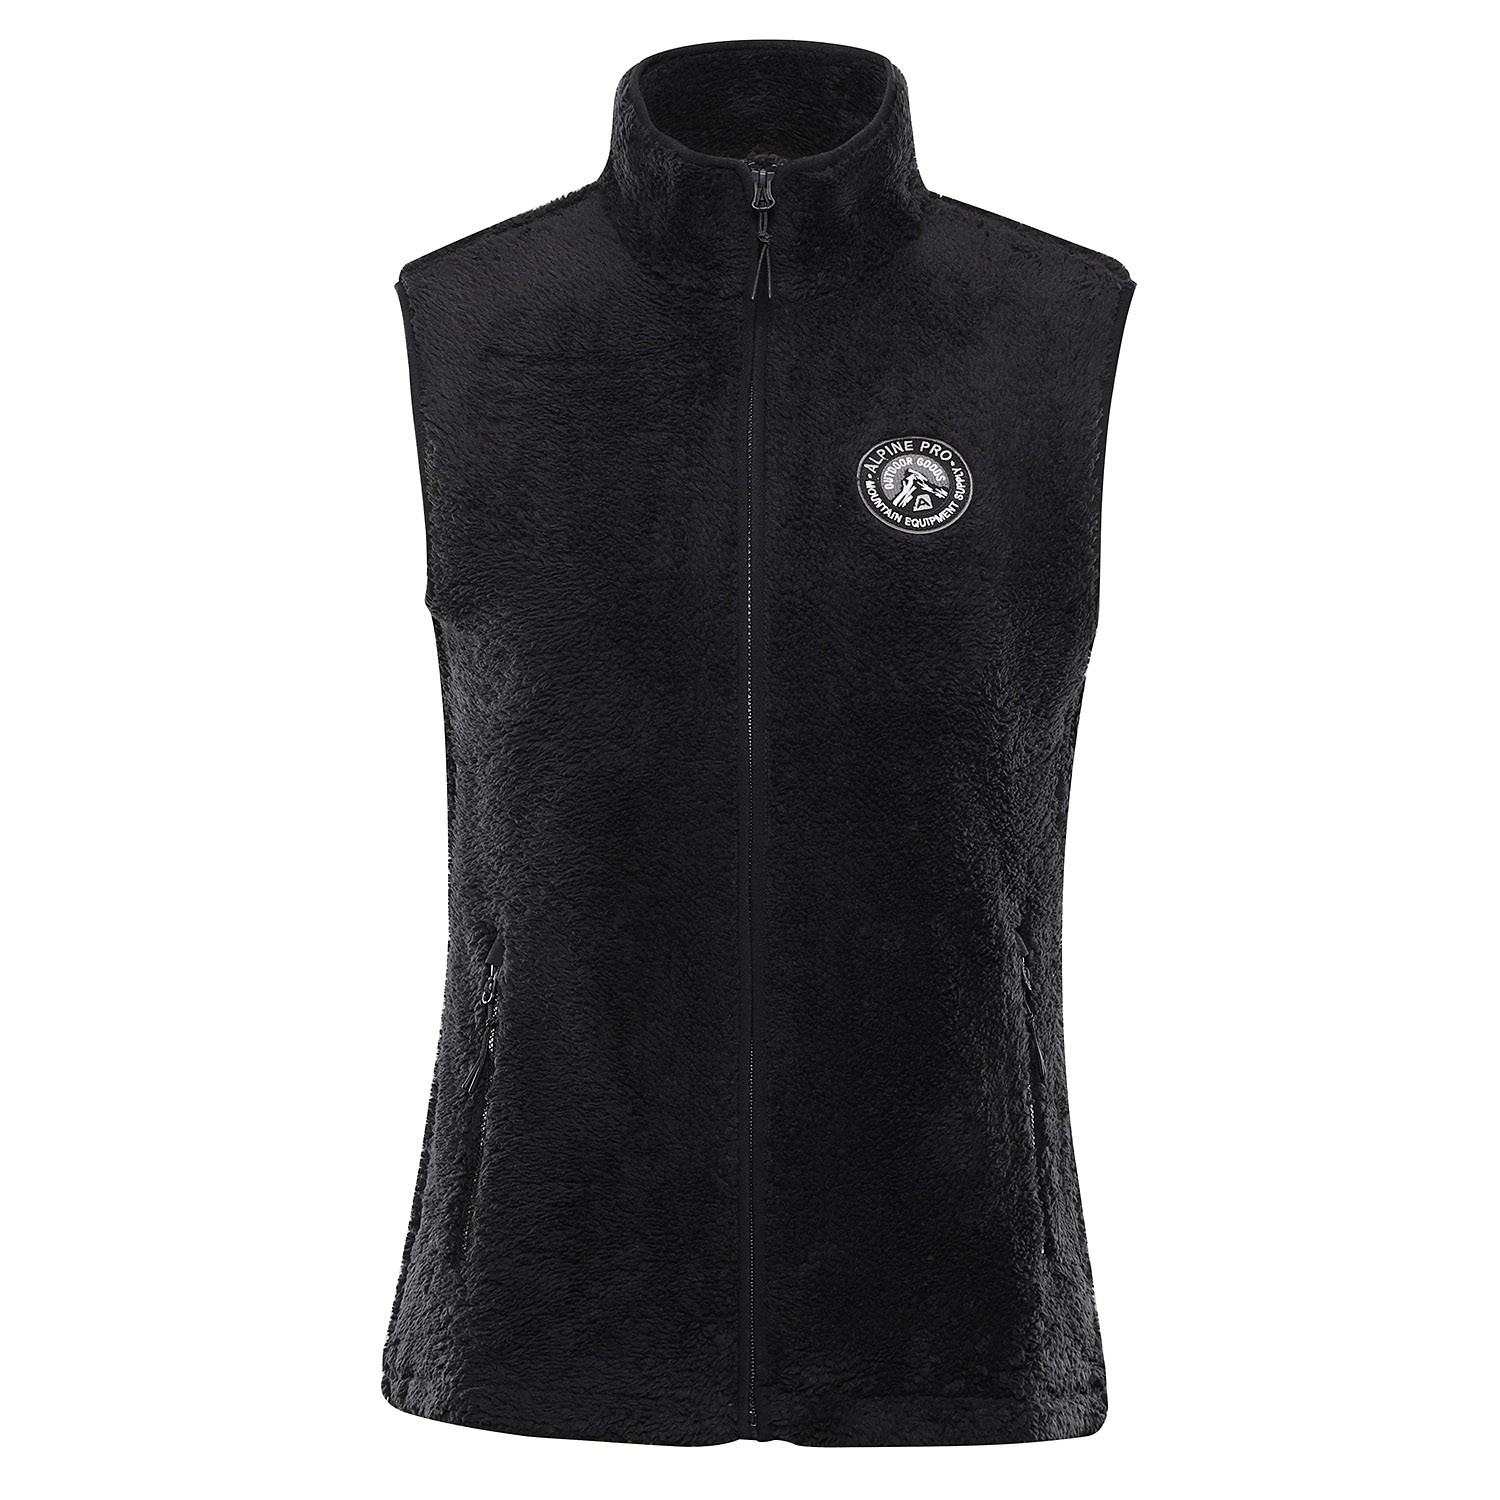 Women's vest supratherm ALPINE PRO OKARA black